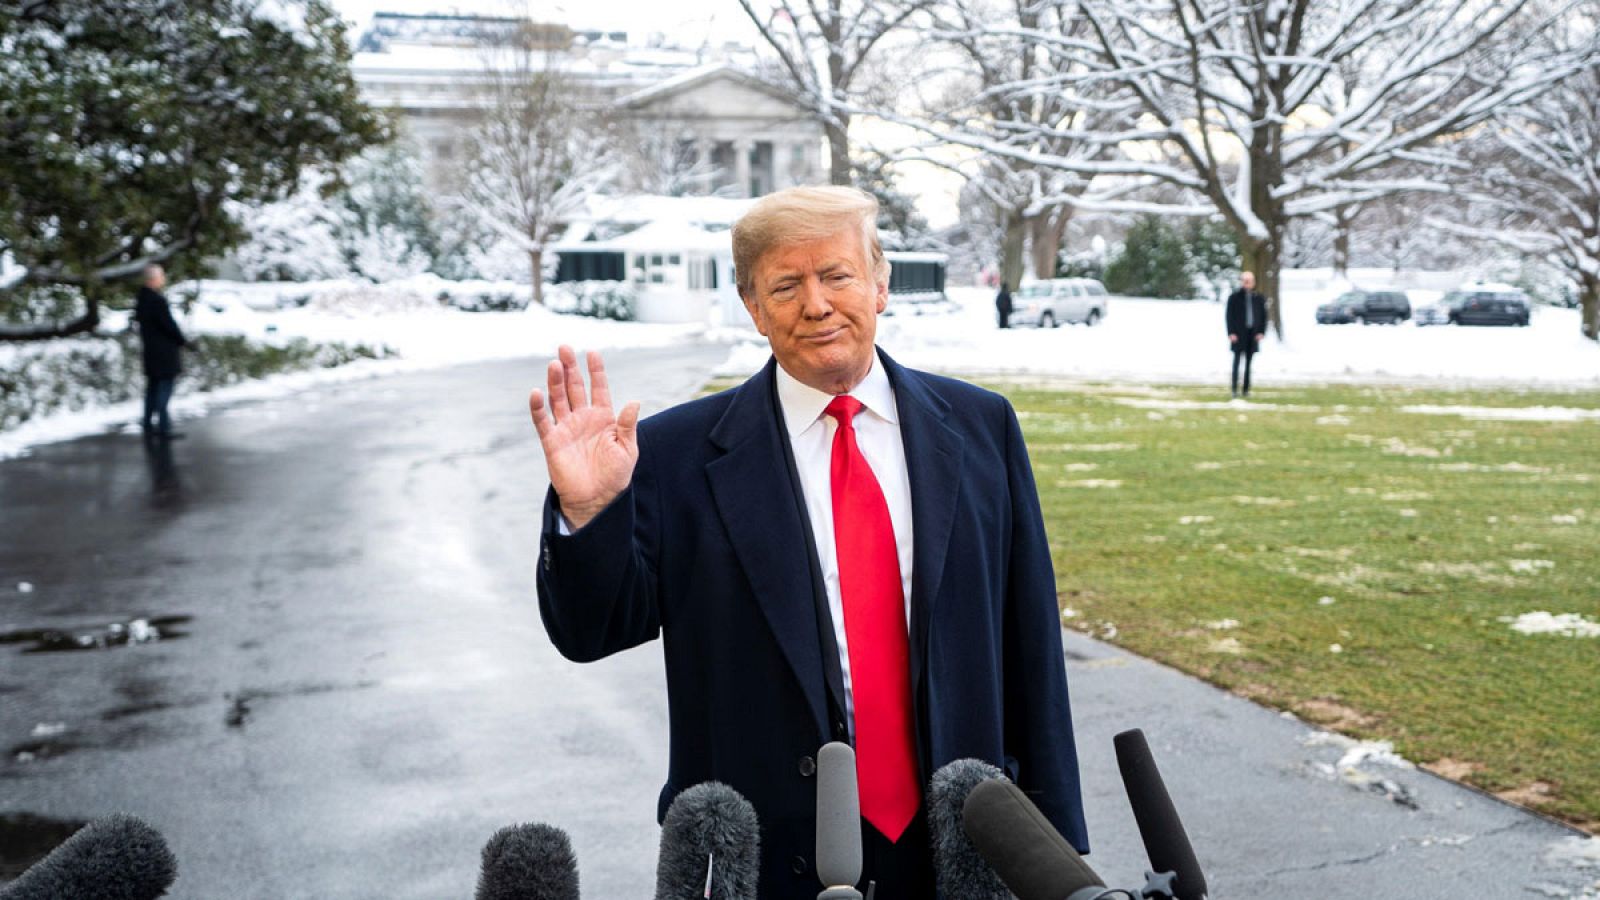 Fotografía de archivo fechada el 14 de enero de 2019, que muestra al presidente estadounidense, Donald Trump, mientras habla a su salida de la Casa Blanca, en Washington (EE.UU.).